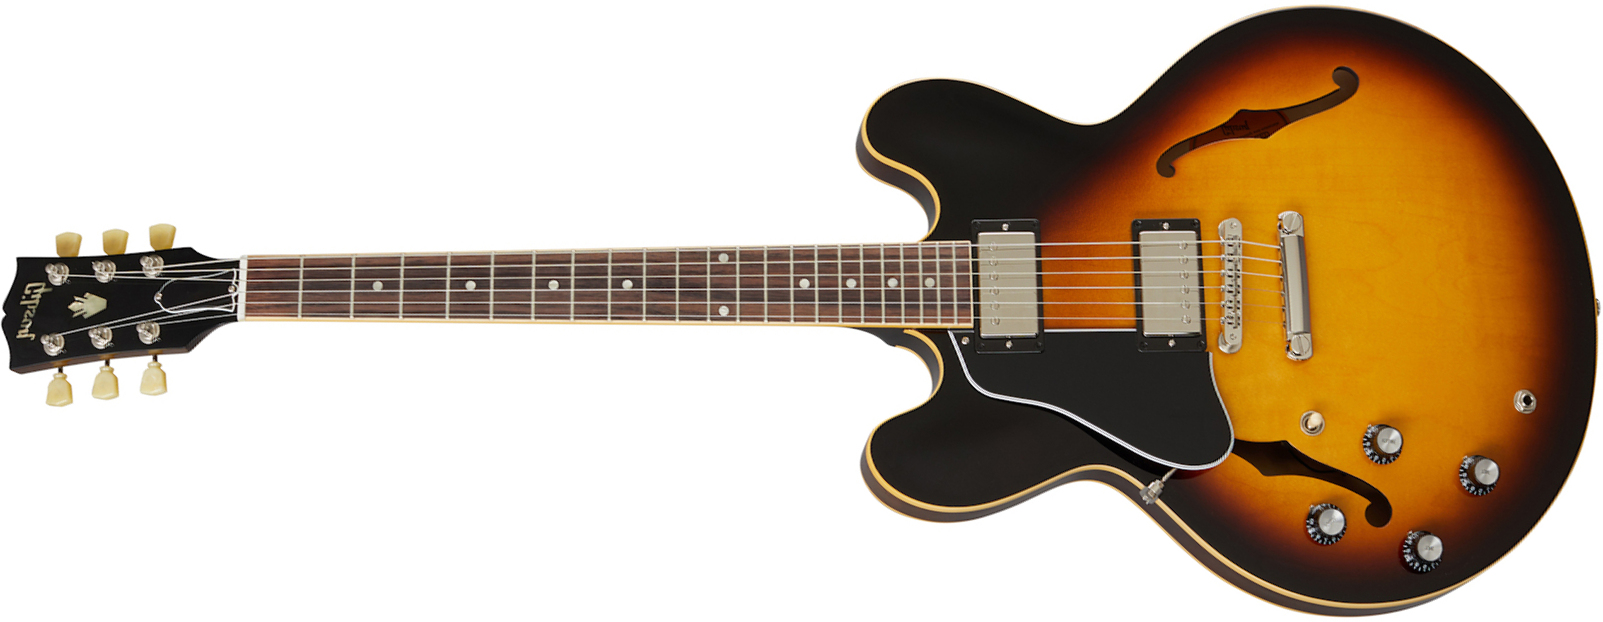 Gibson Es-335 Dot Lh Original 2020 Gaucher 2h Ht Rw - Vintage Burst - Guitarra electrica para zurdos - Main picture